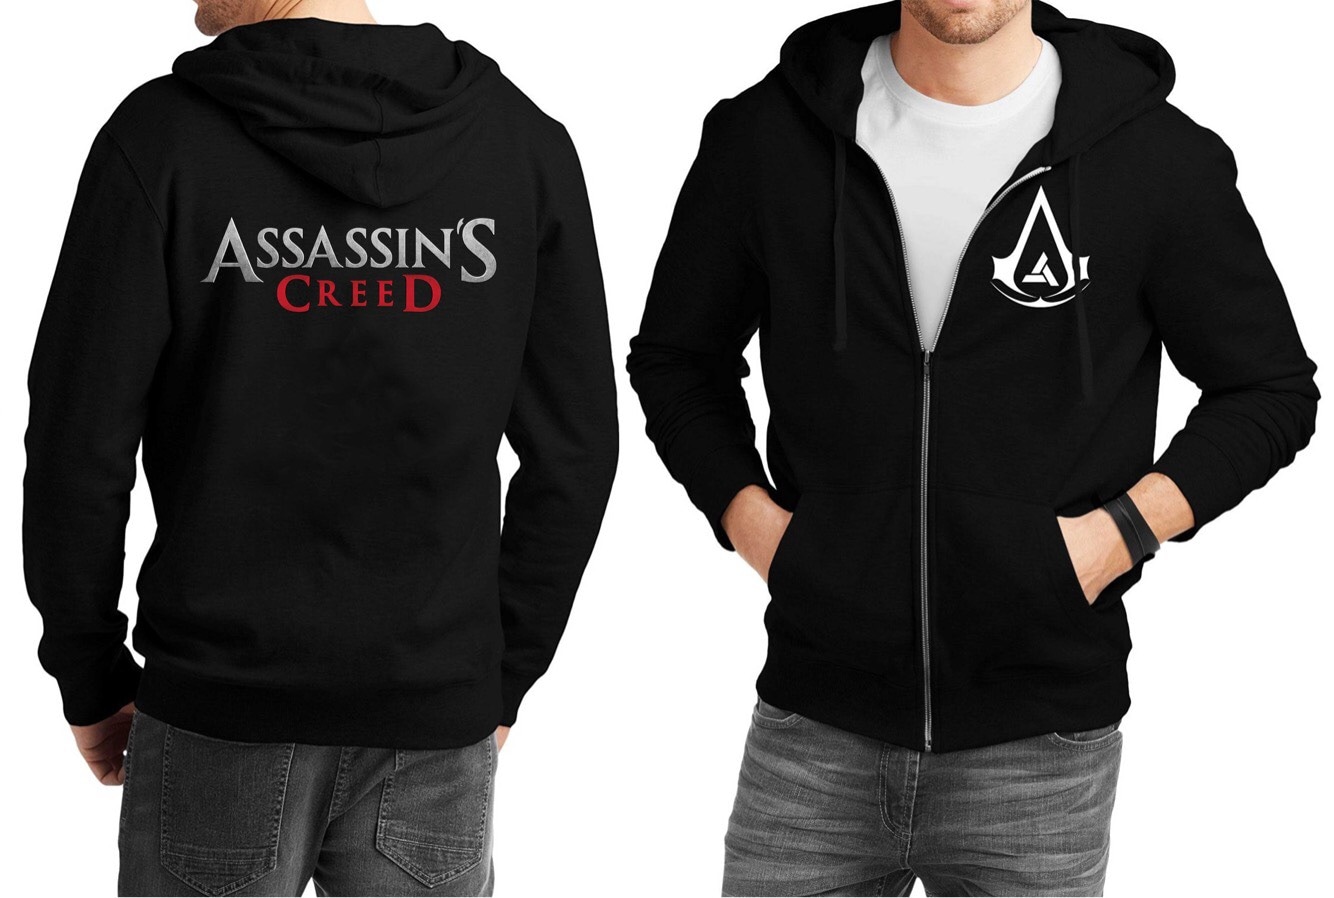 Hadiah Barang Dagangan Assassin’s Creed Gadget 360 – Hari 2